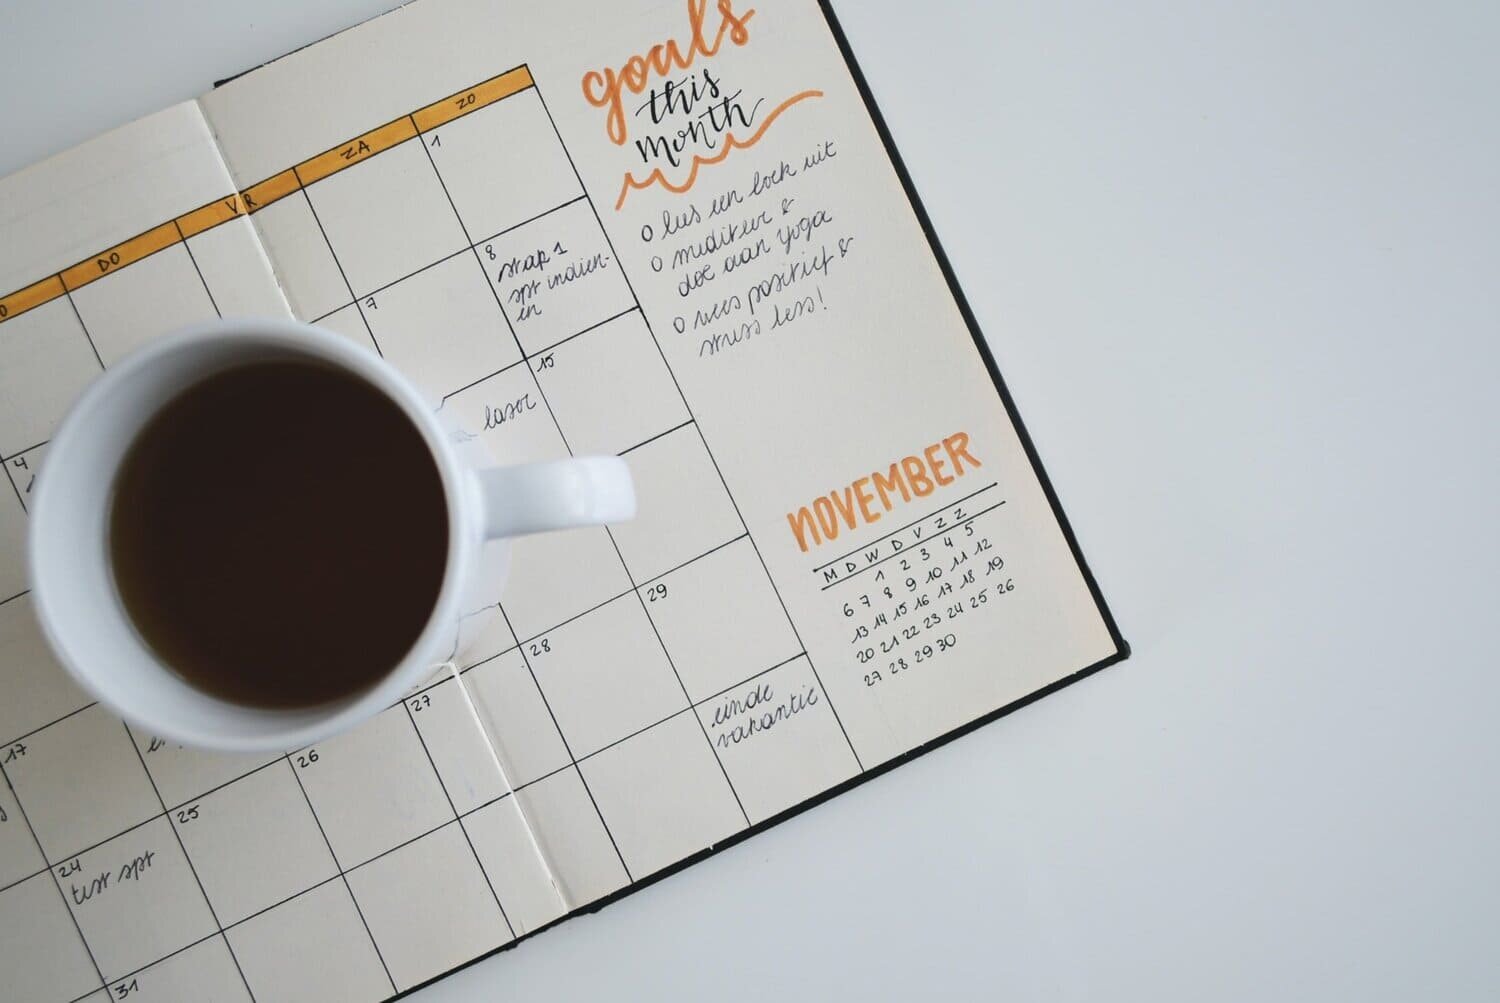 Taza de café llena apoyada sobre una agenda mensual abierta.